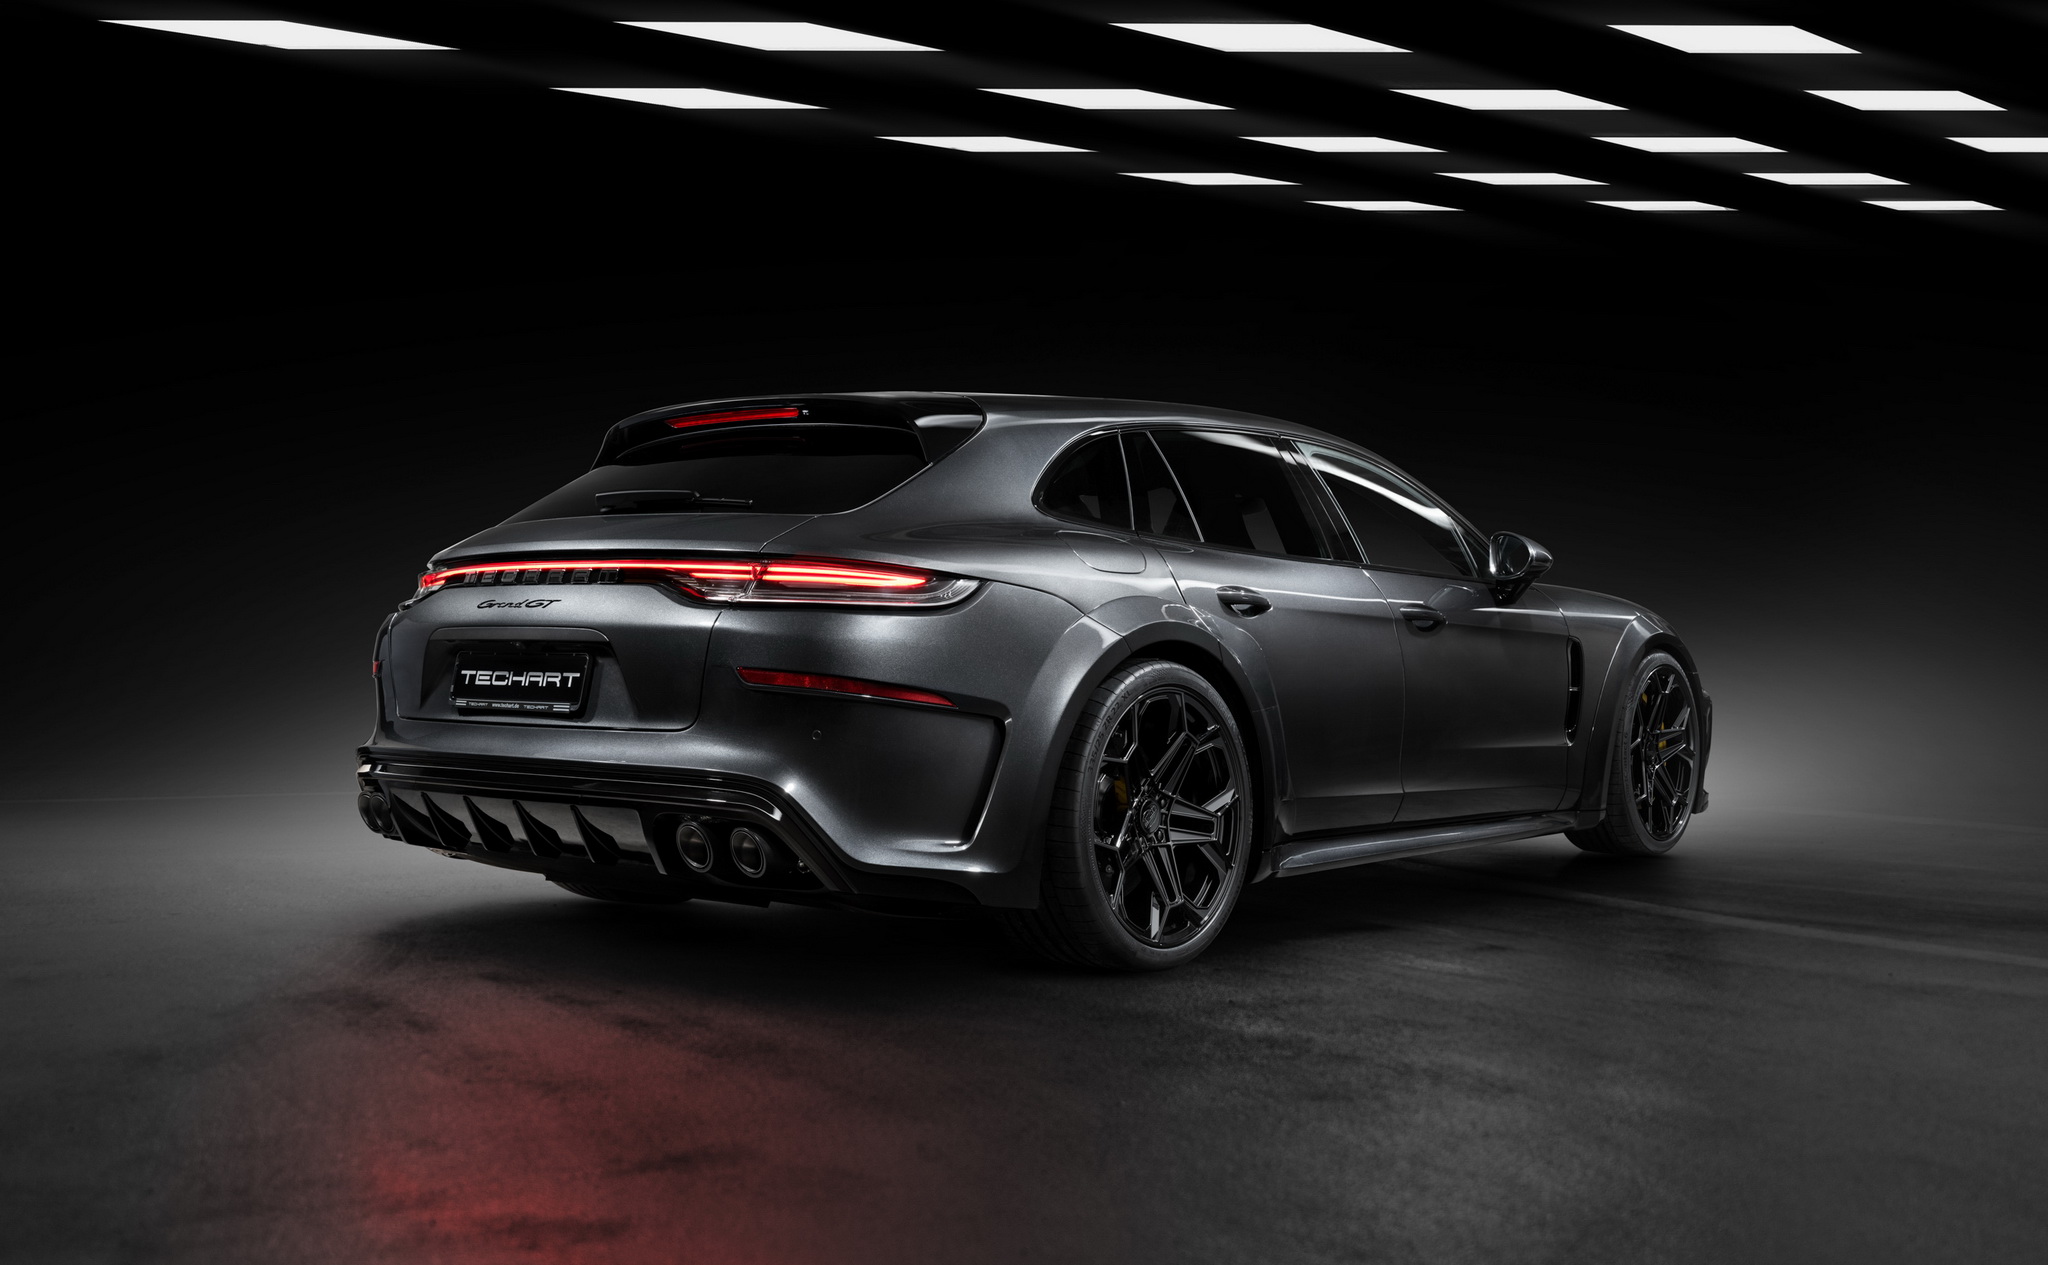 TechArt GrandGT ชุดแต่งใหม่สำหรับ Porsche Panamera พร้อมปรับจูนแรงม้าขับมันส์กว่าเดิม!